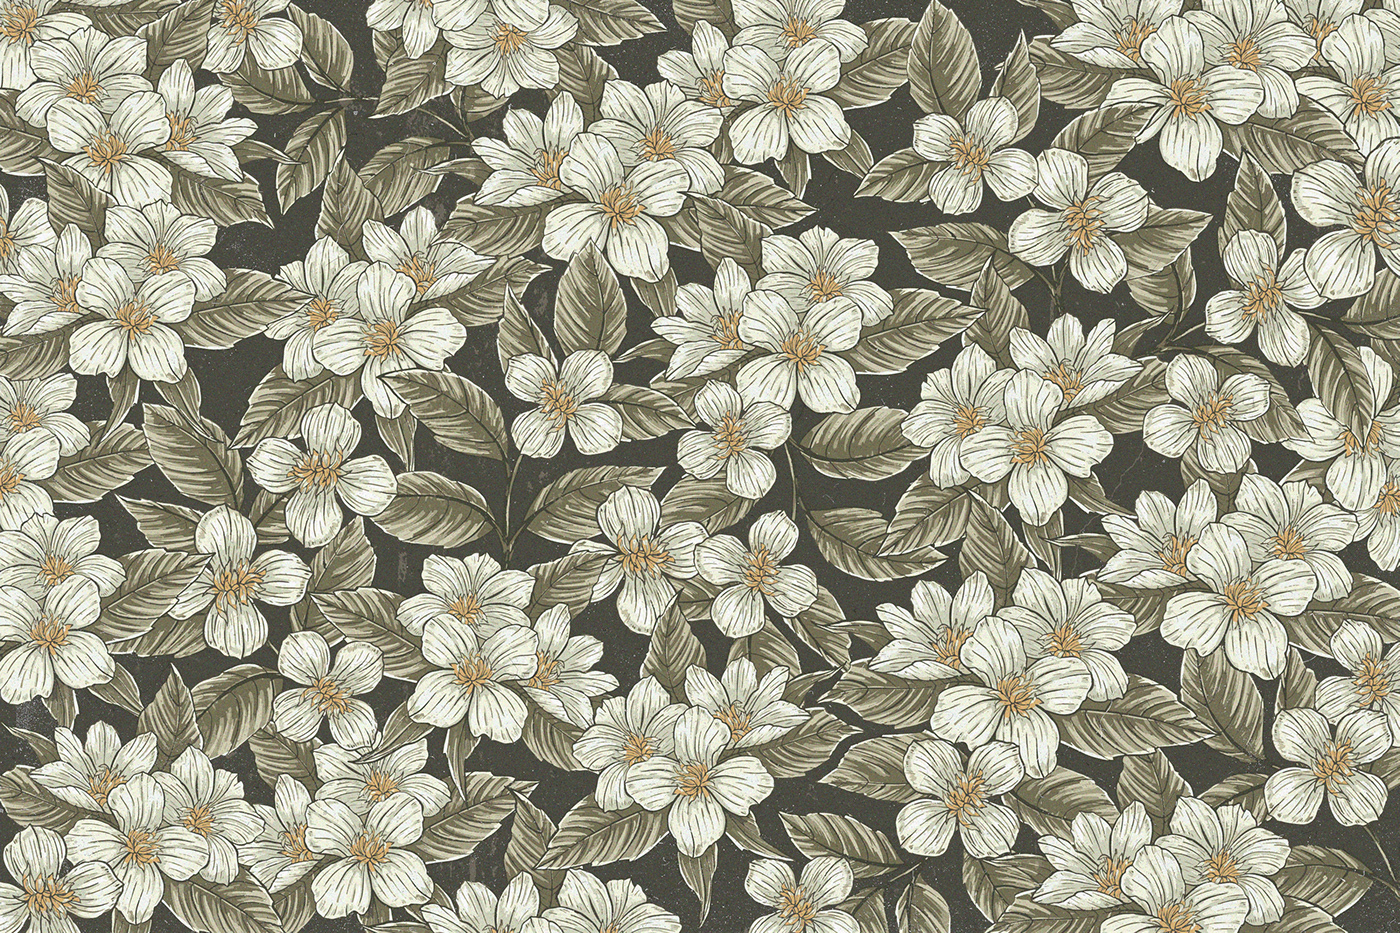 artwork fabric design floral flower Flowers ILLUSTRATION  pattern spring Tropical vintage